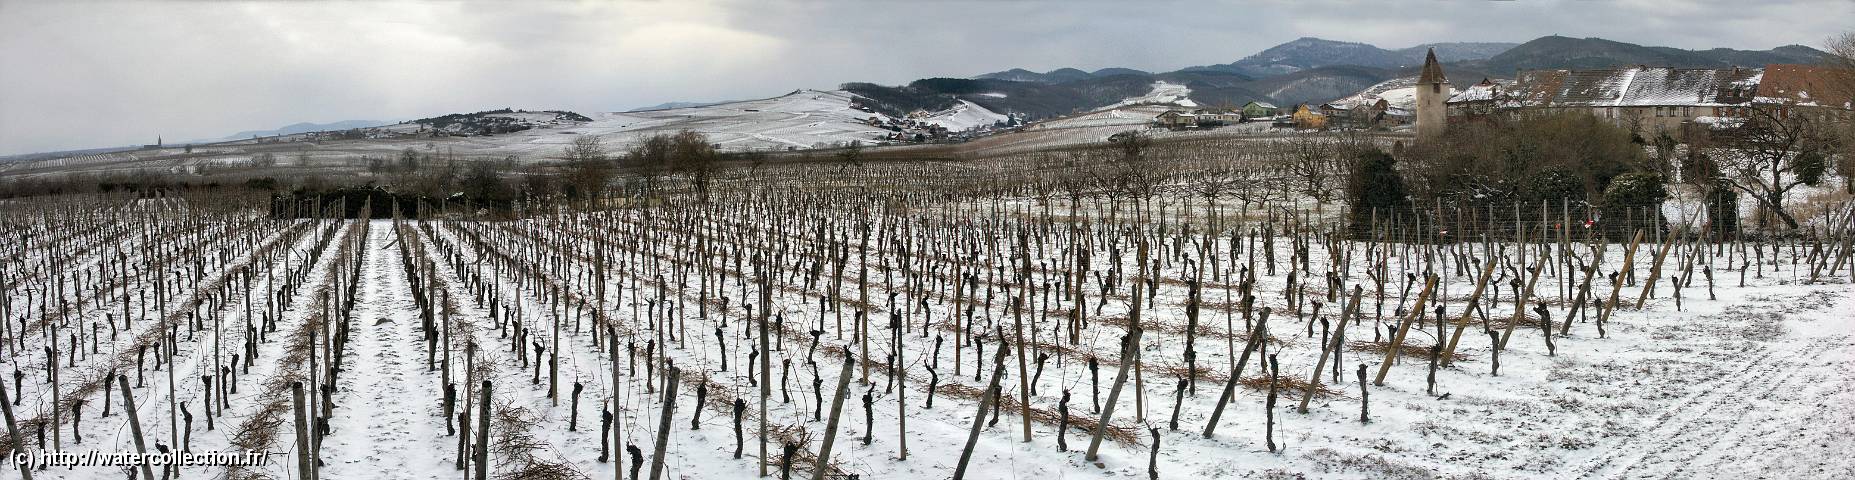 2005-02-27 Les-Vignes-d-Alsace_PICT0014_Panorama.jpg